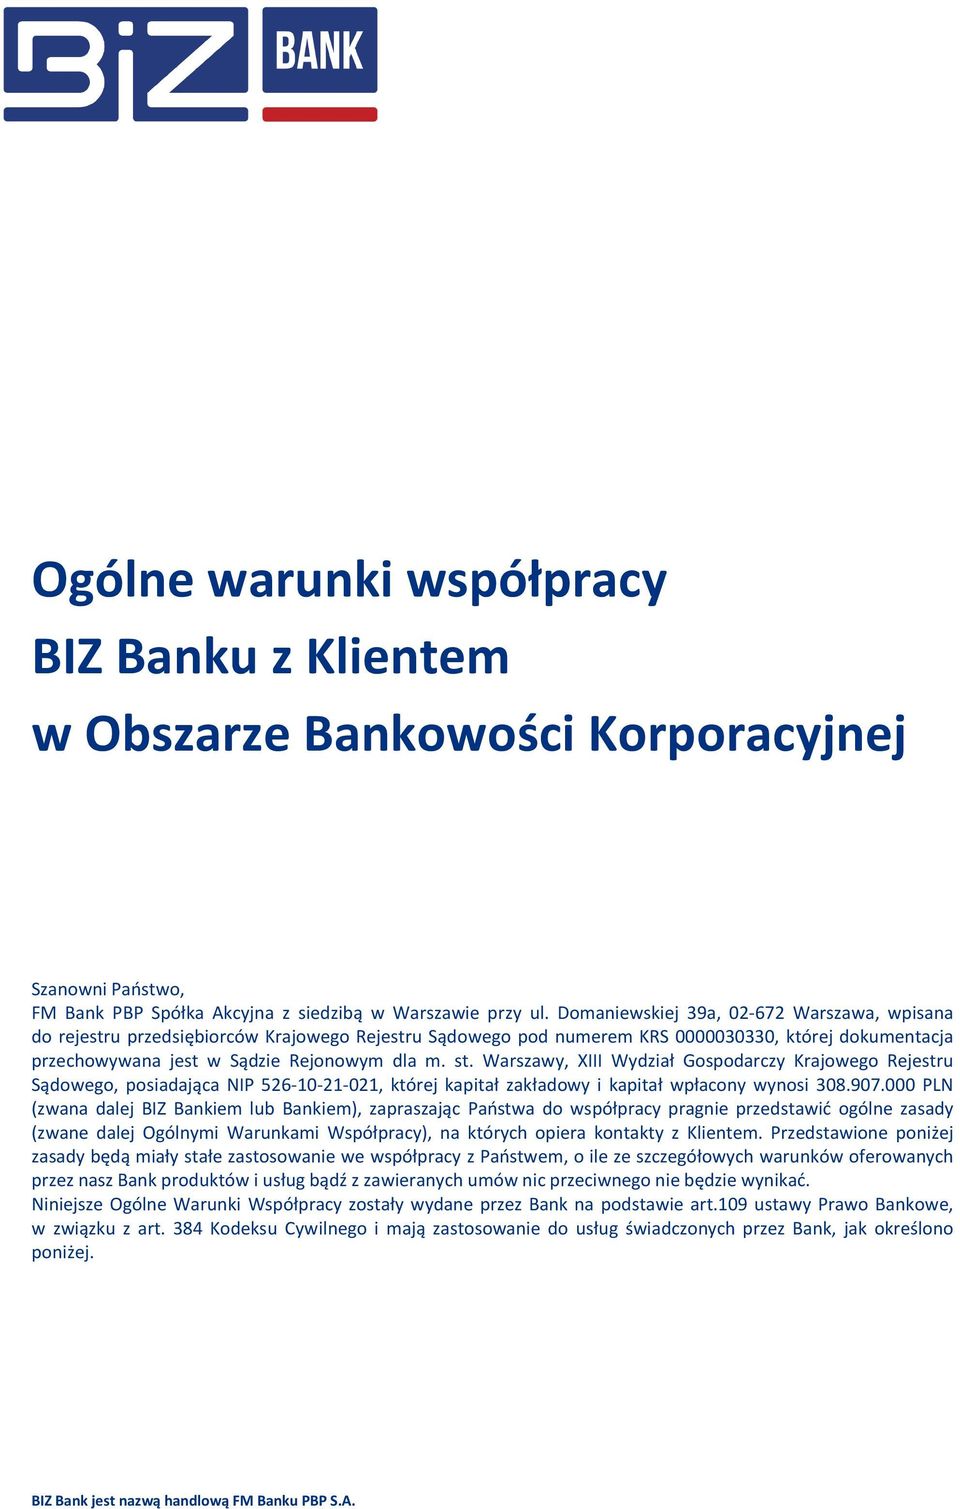 Warszawy, XIII Wydział Gospodarczy Krajowego Rejestru Sądowego, posiadająca NIP 526-10-21-021, której kapitał zakładowy i kapitał wpłacony wynosi 308.907.